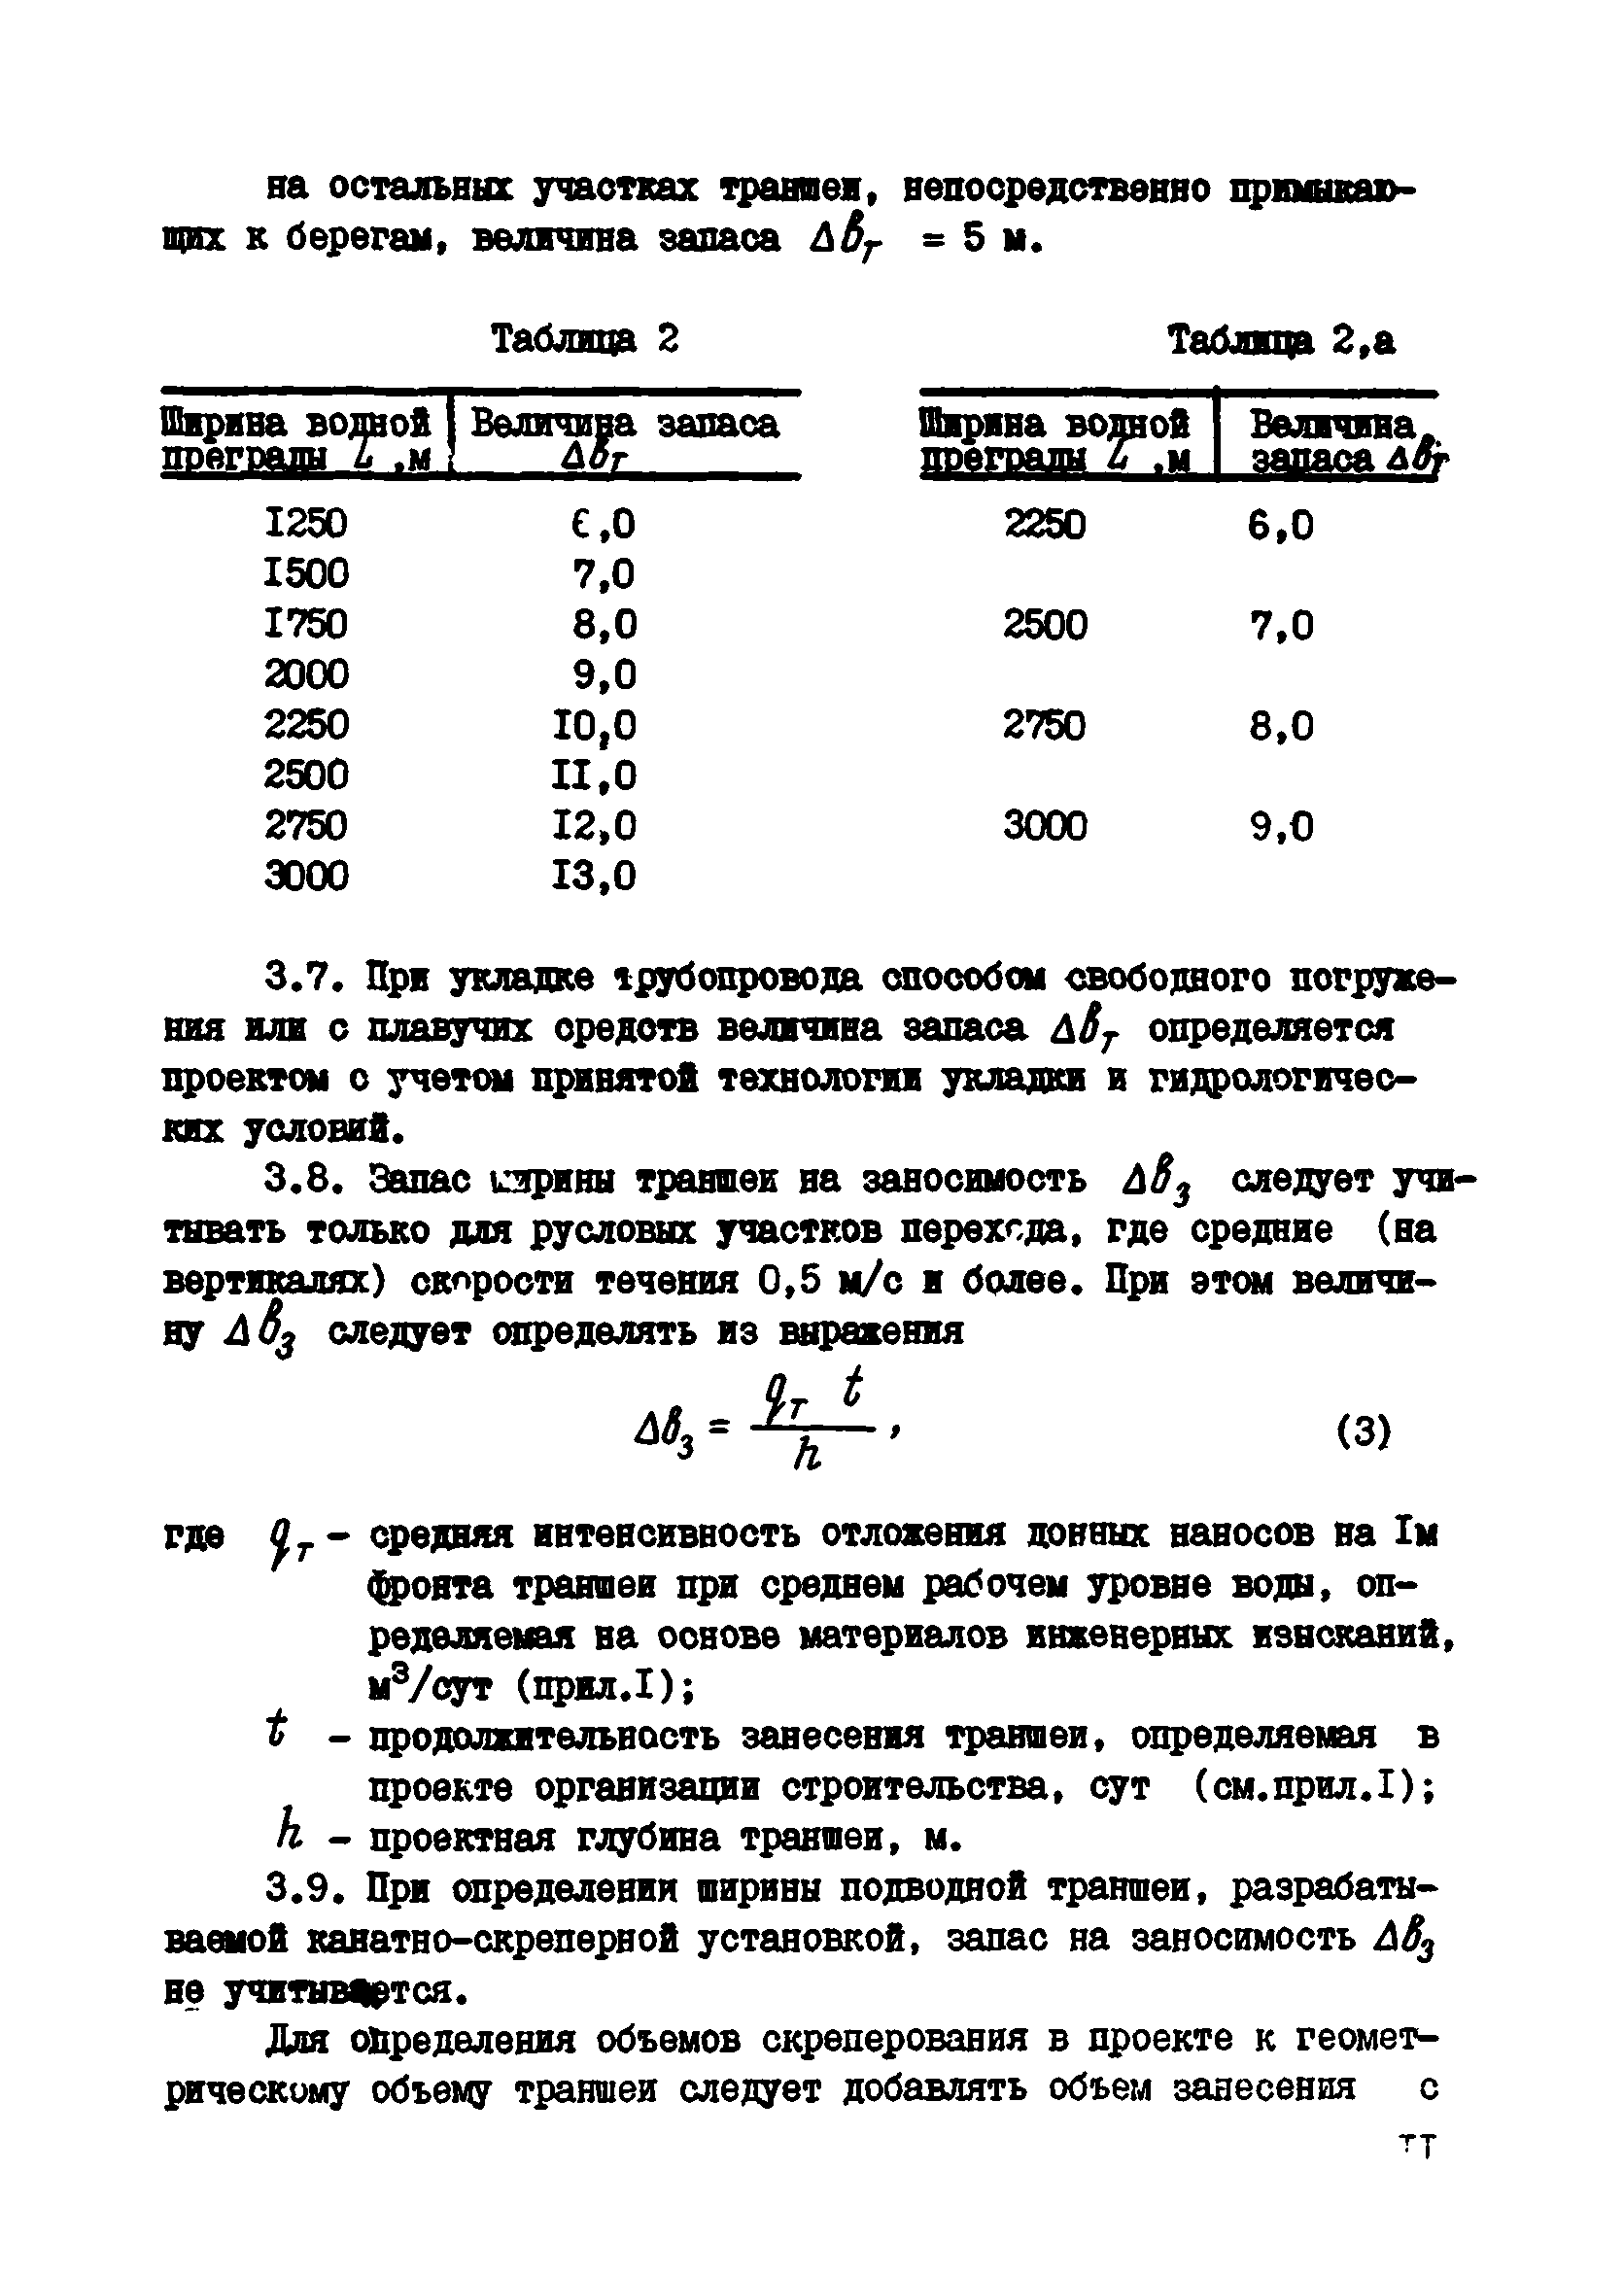 ВСН 2-118-80